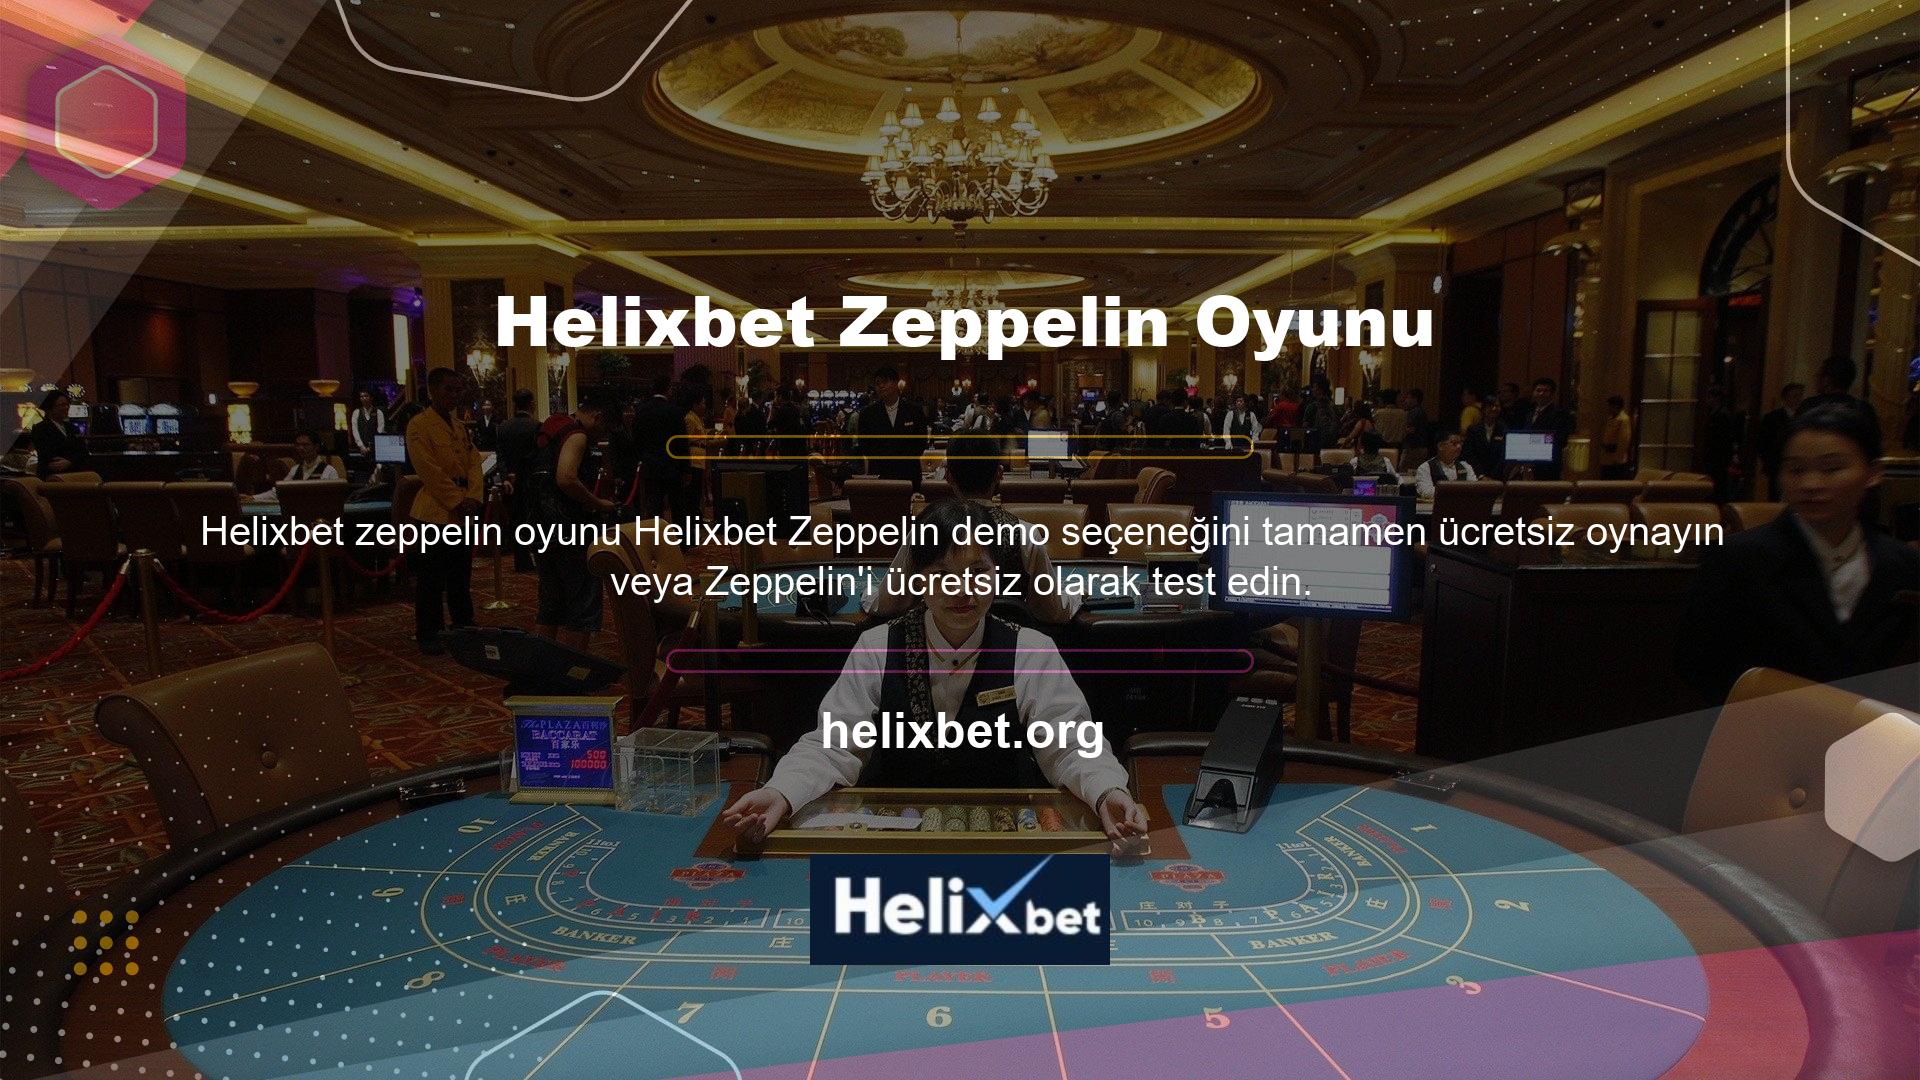 Helixbet, Led Zeppelin adlı bir bahis ve casino sitesidir, bu nedenle bu alanda ilerlemek veya düşük riskle oynamak isteyen oyun severler için demo versiyonu sunulmaktadır